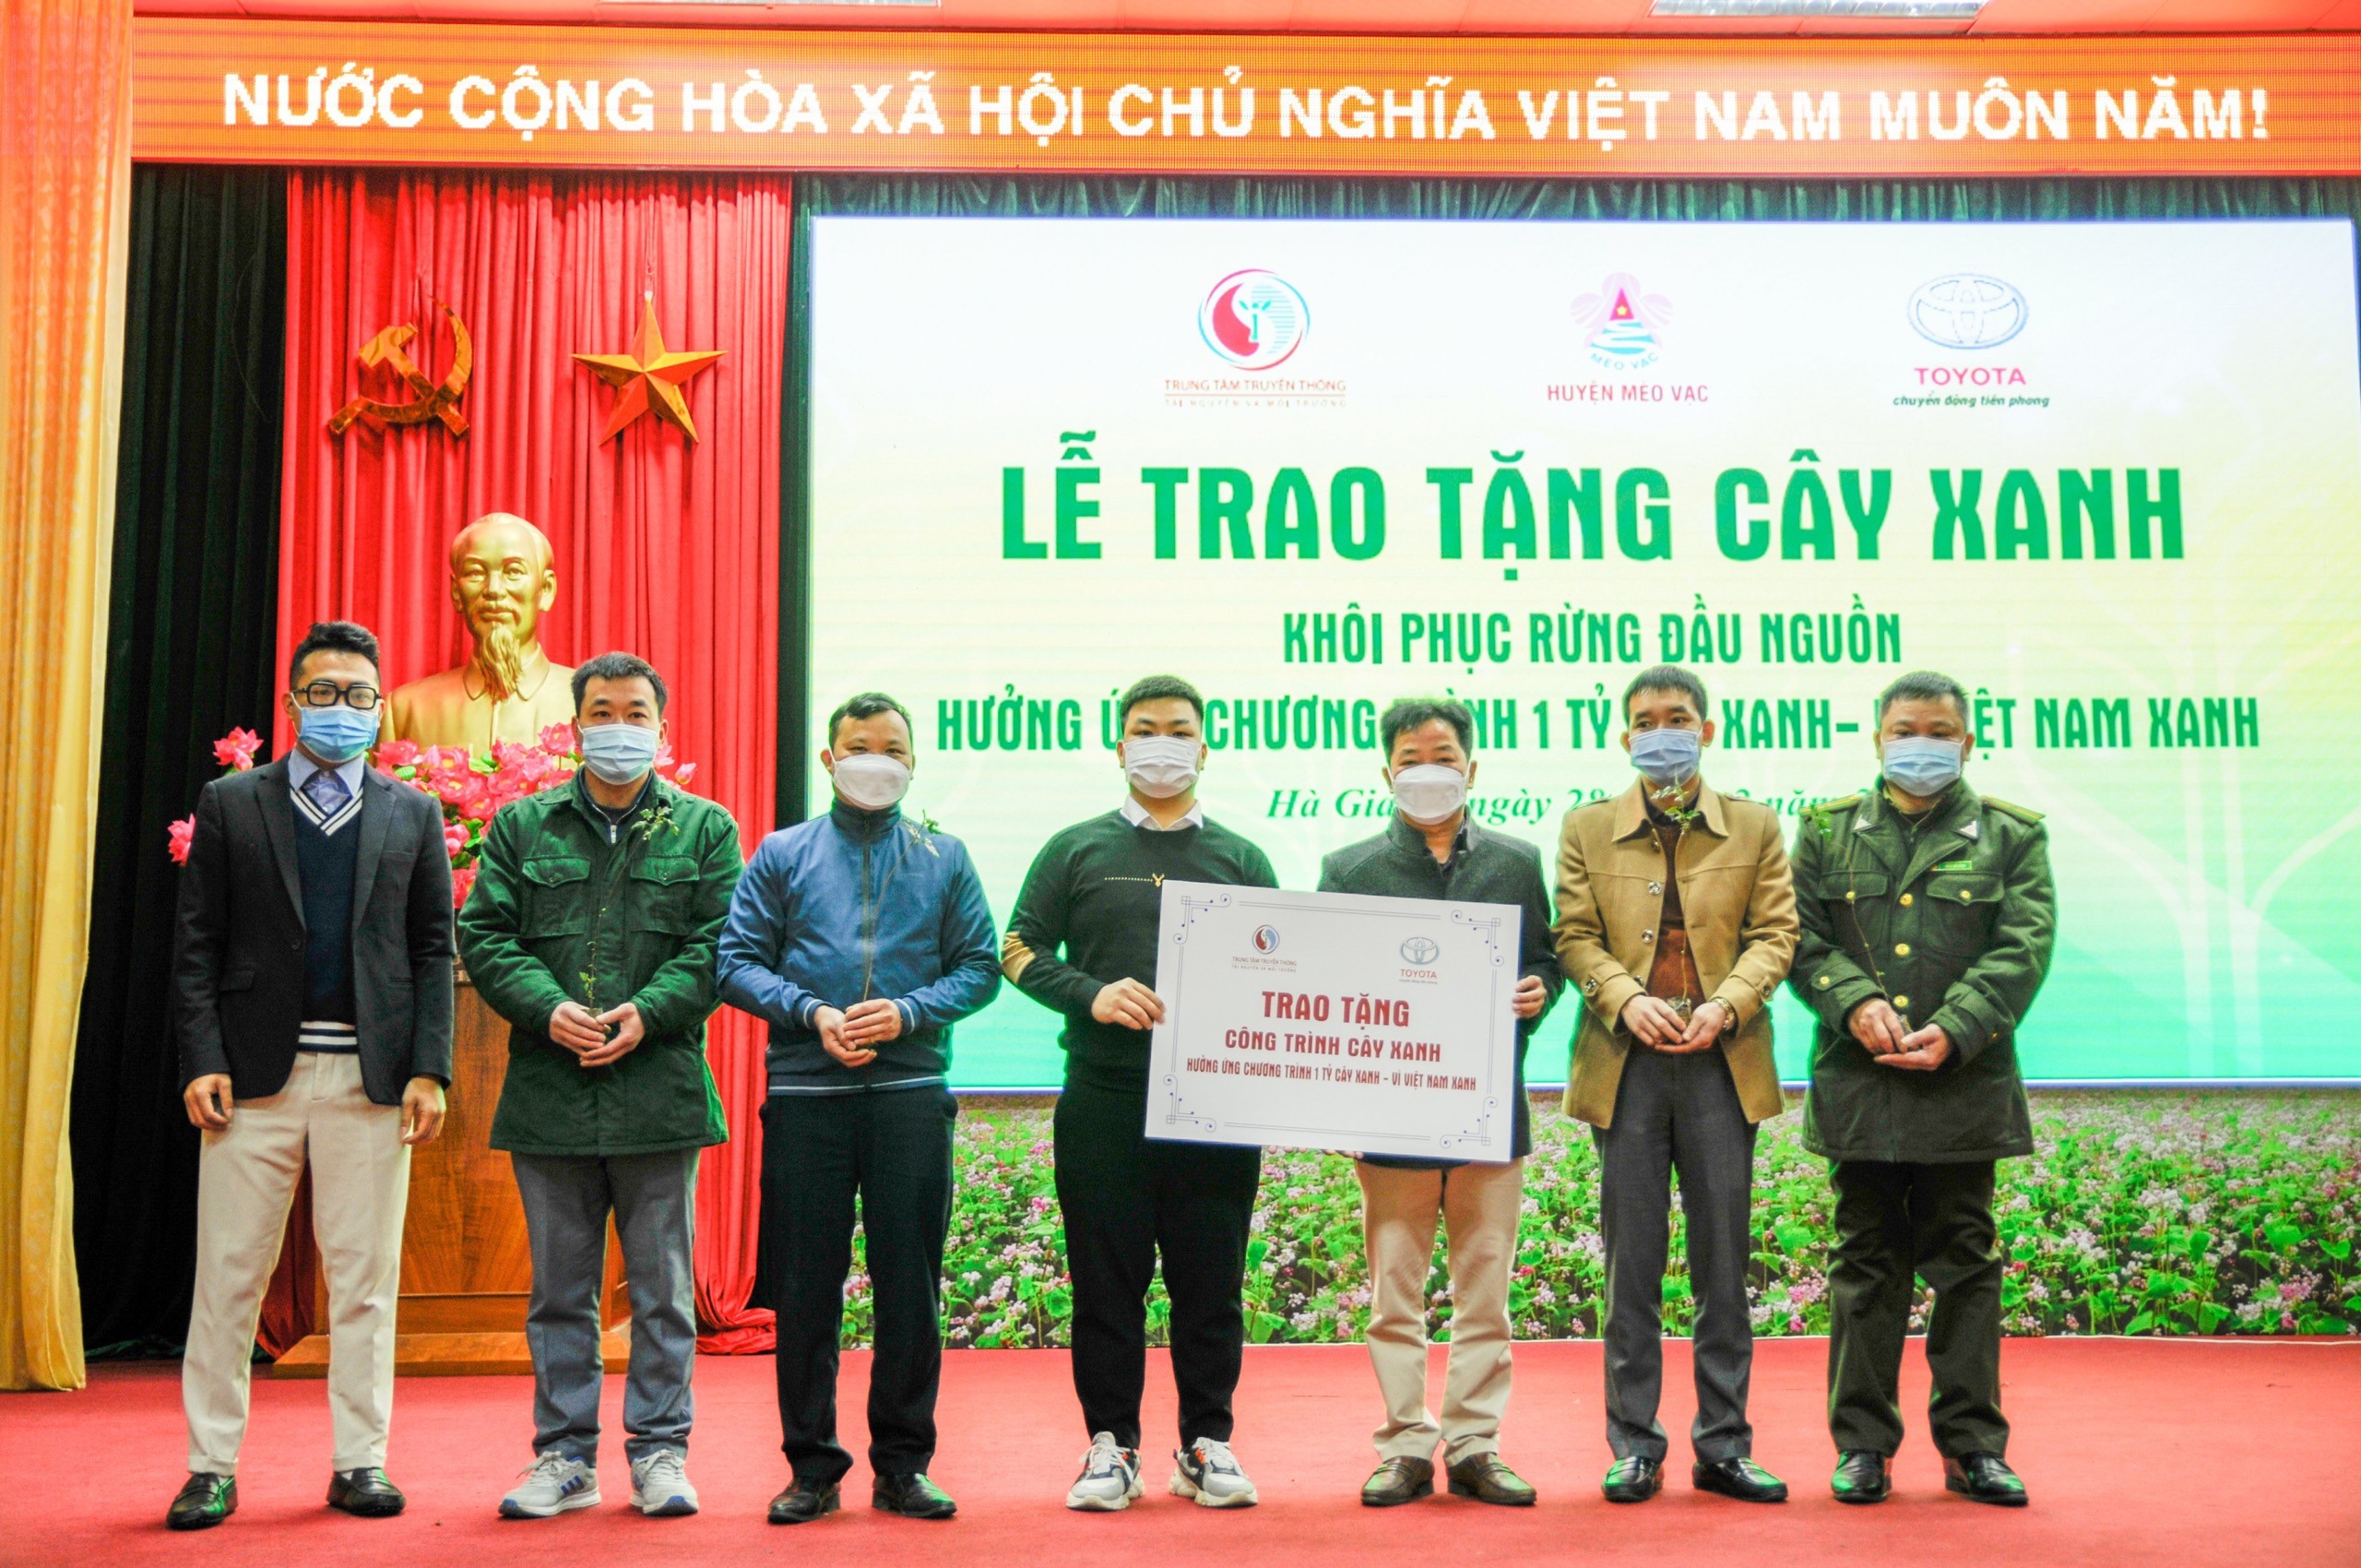 Toyota Việt Nam trao tặng hàng nghìn cây xanh khôi phục rừng đầu nguồn le-trao-tang-cay-xanh-khoi-phuc-rung-dau-nguon-huong-ung-chuong-trinh-1-ty-cay-xanh-vi-viet-nam-xanh-1.jpg